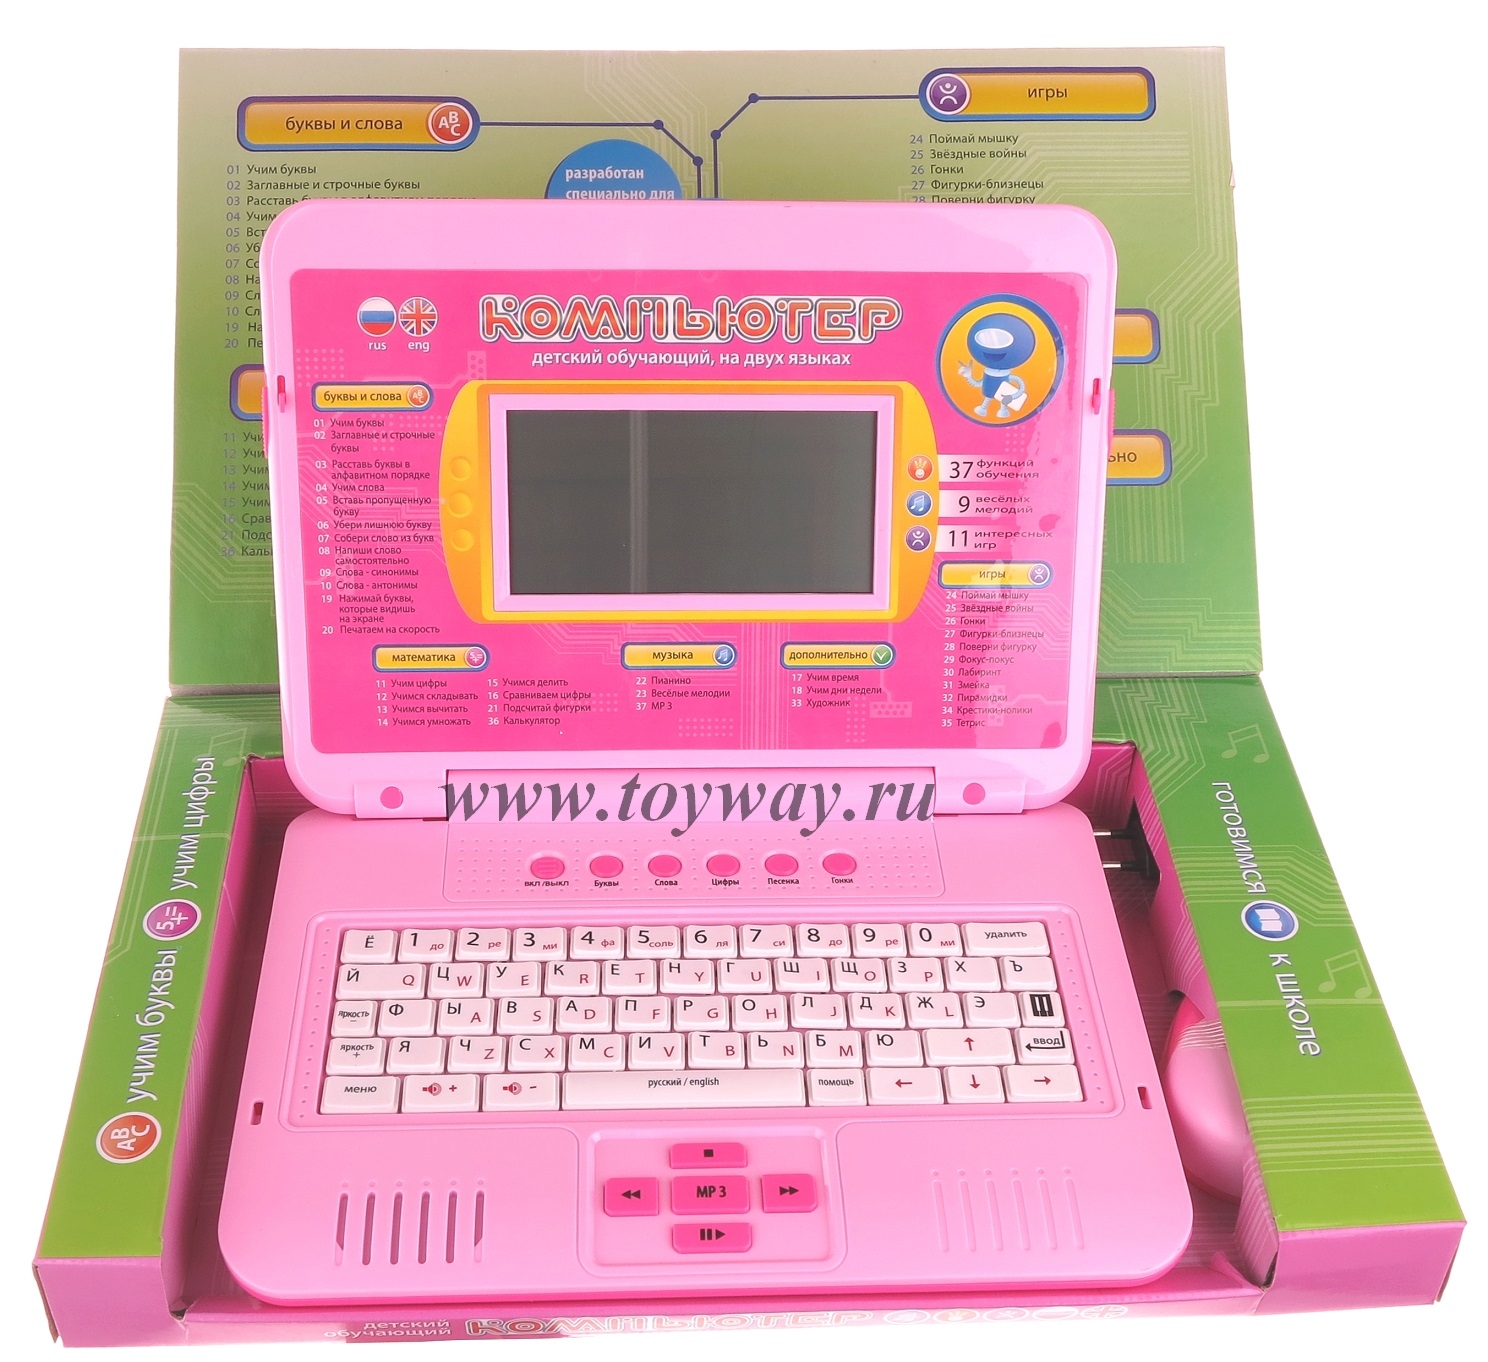 Игры детям на ноутбук. Ноутбук Joy Toy 7076. Детский обучающий компью. Детский компьютер. Игрушечный компьютер для детей.